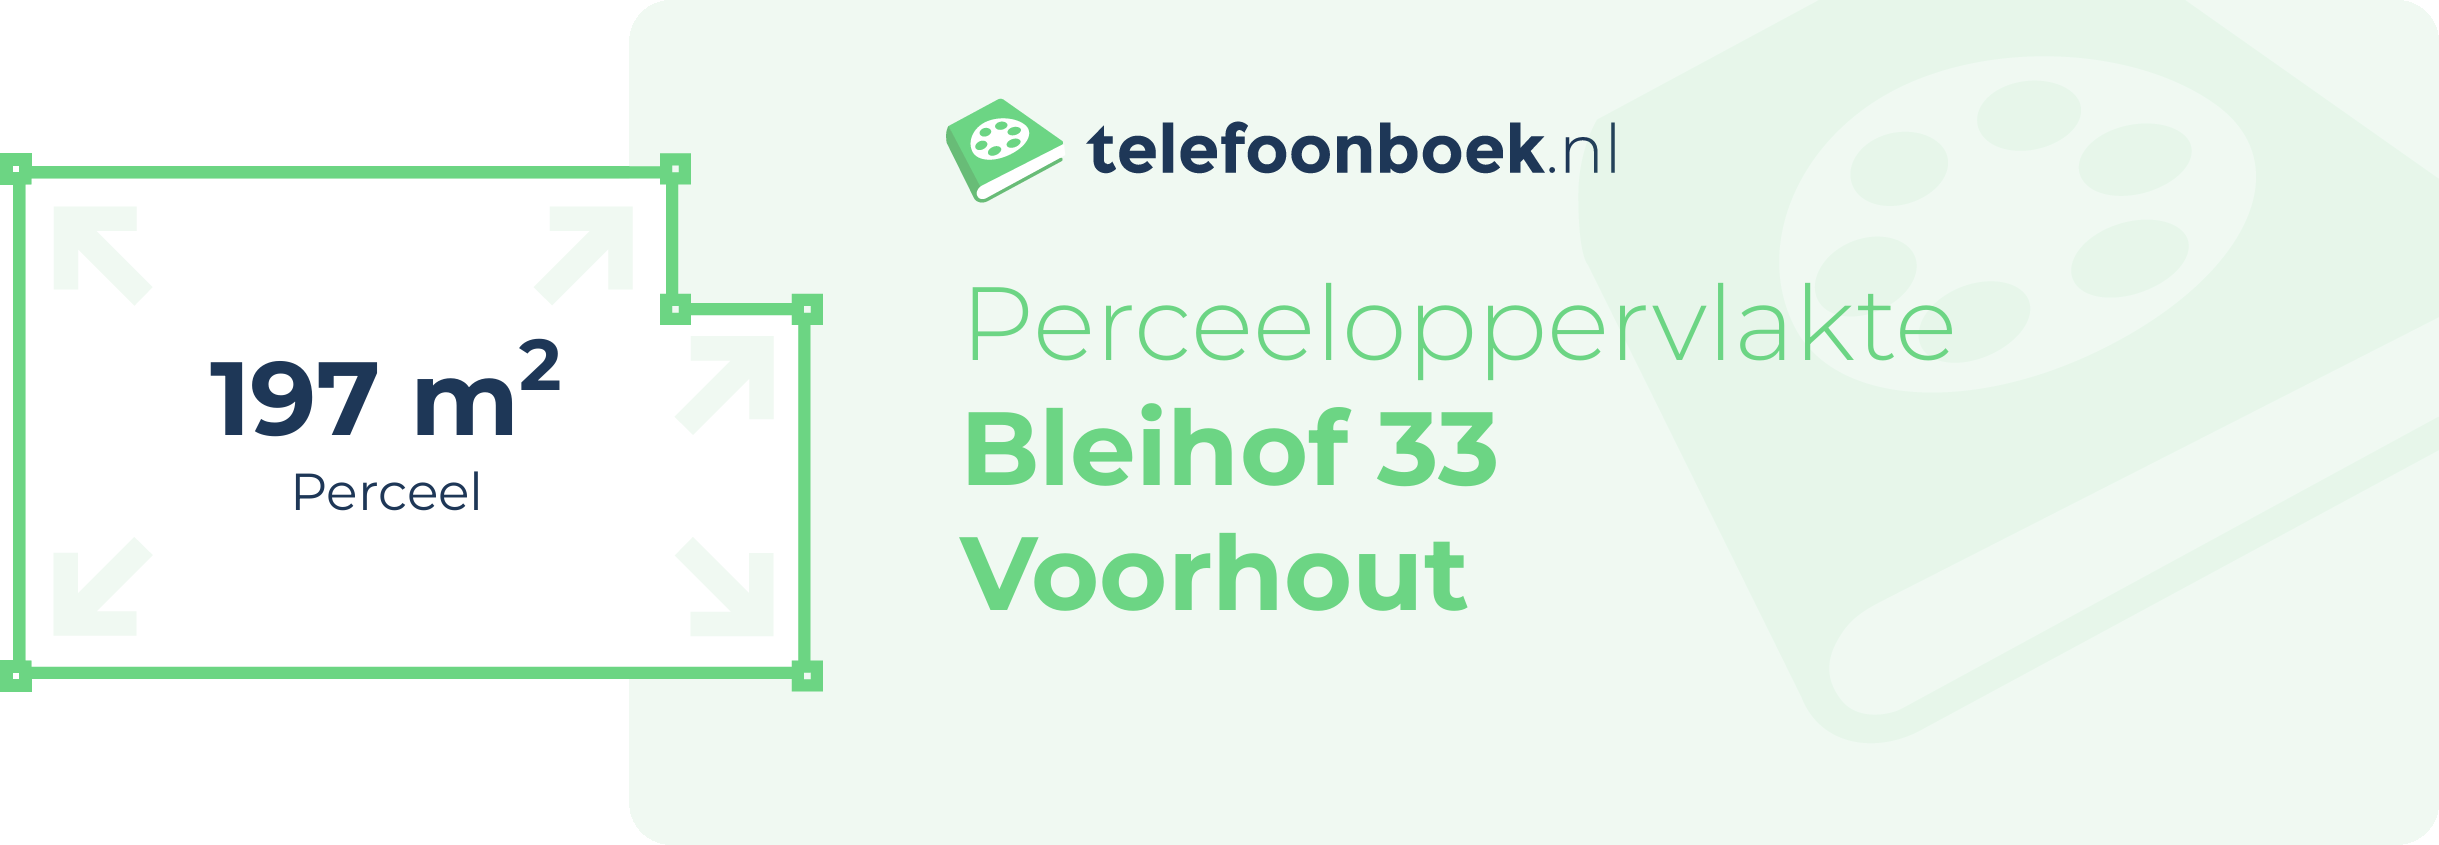 Perceeloppervlakte Bleihof 33 Voorhout